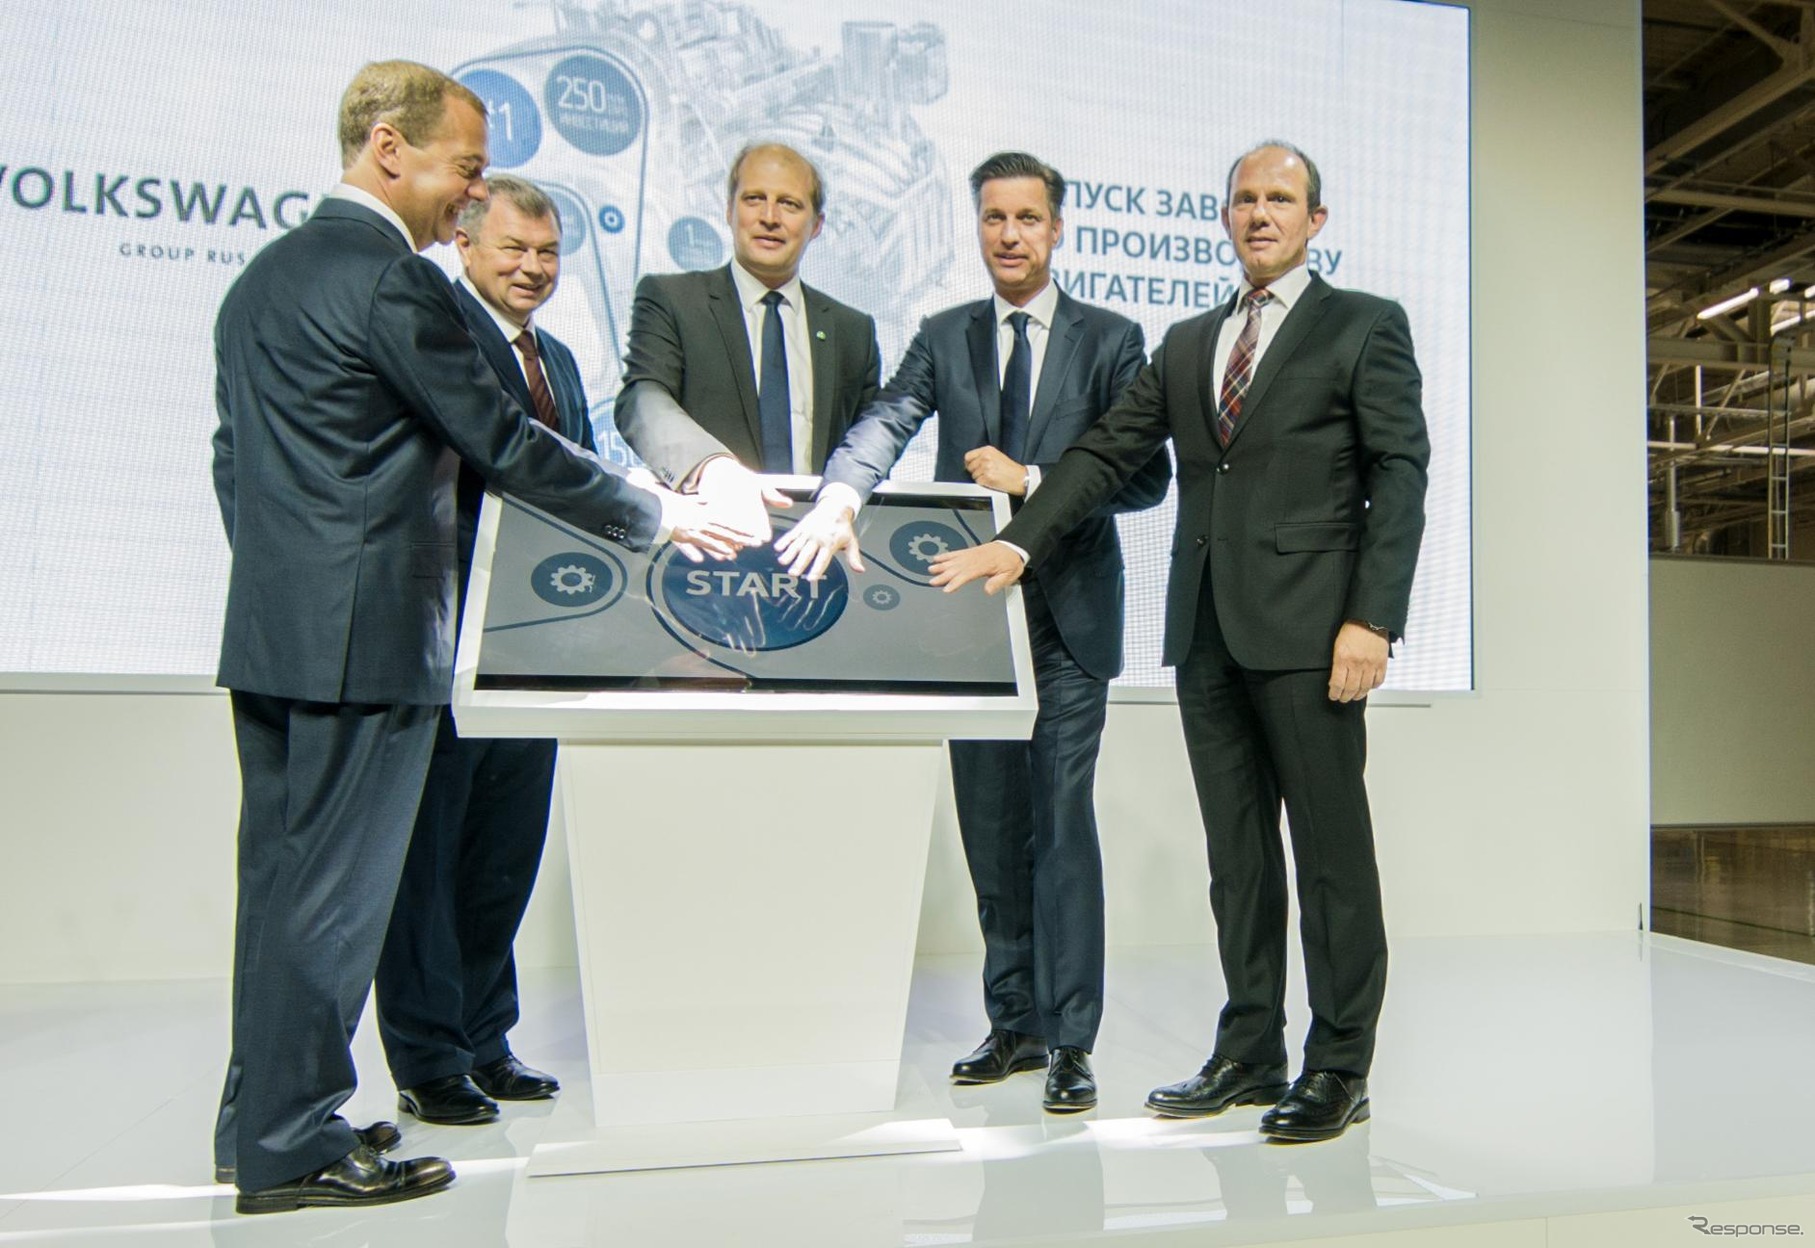 VW グループのロシア新エンジン工場が稼働